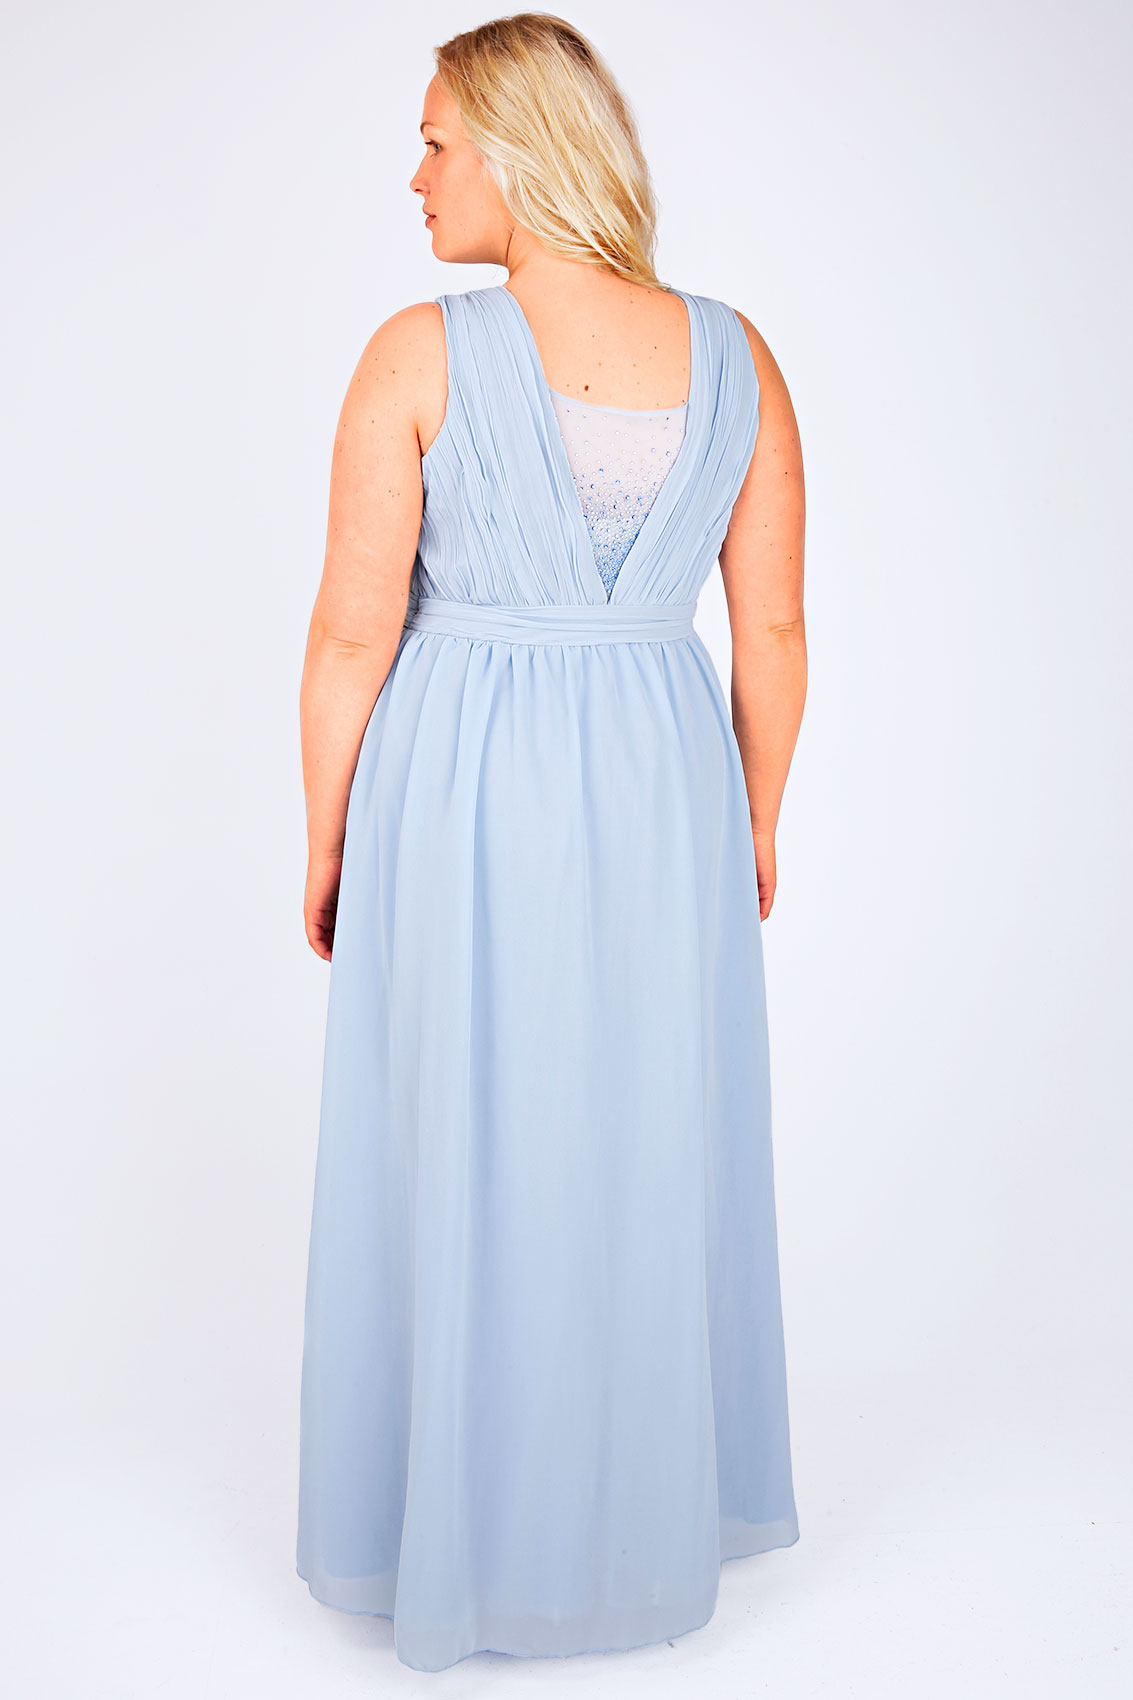 CHI CHI LONDON Pastel Blue Maxi Prom Dress With Diamanté Details Plus